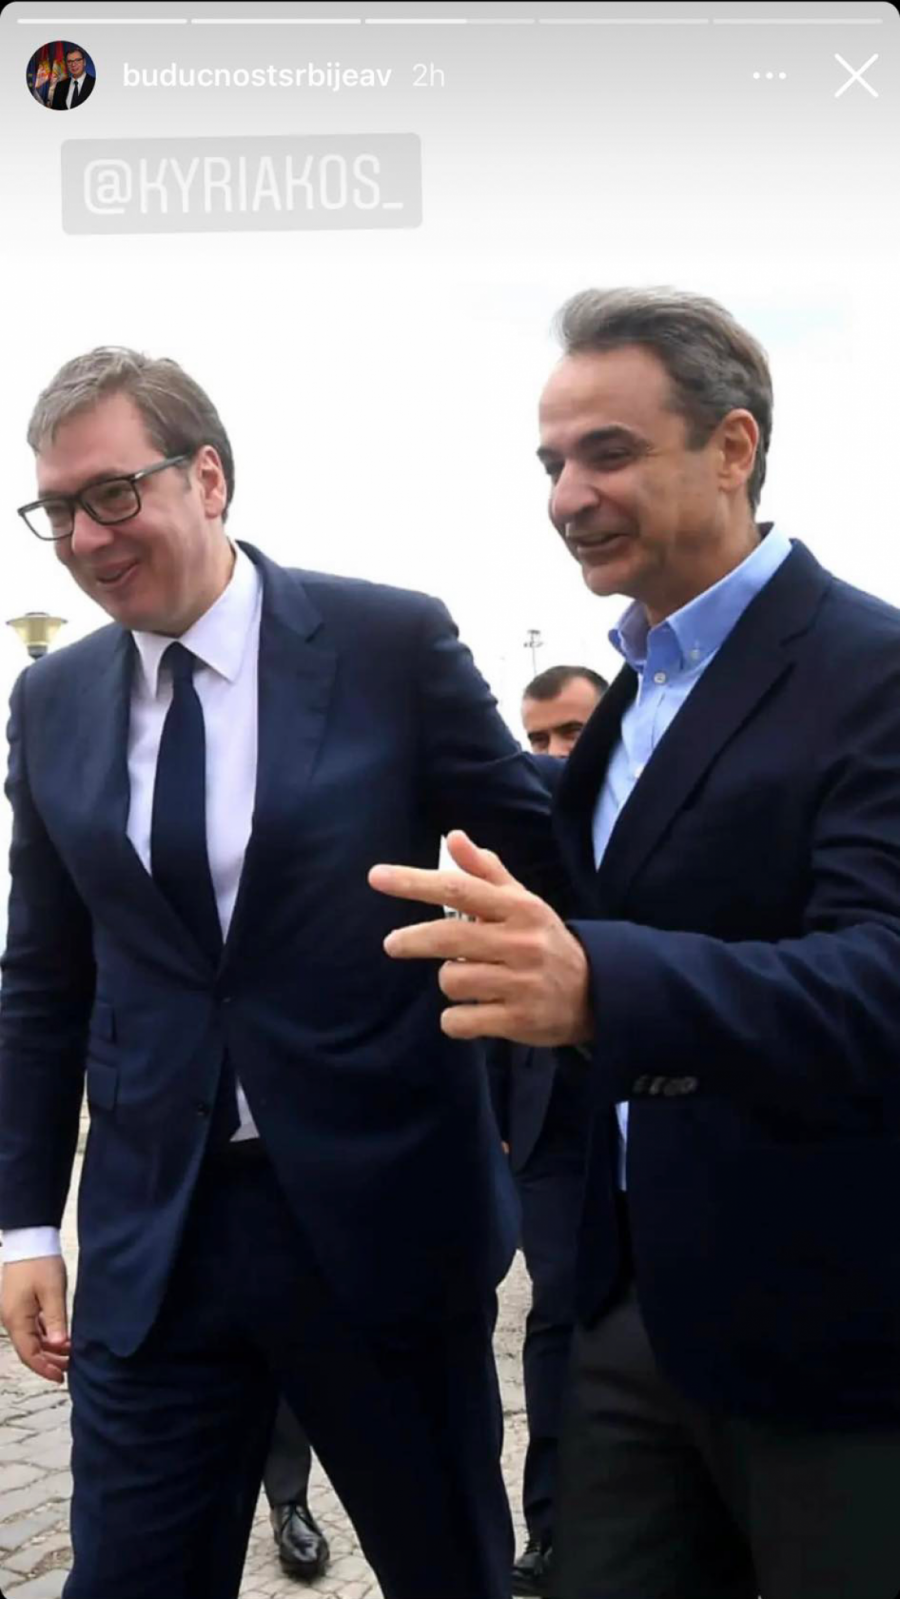 SASTANAK U NESVAKIDAŠNJEM AMBIJENTU Vučić razgovarao sa Kirjakosom i Šarl Mišelom u Grčkoj